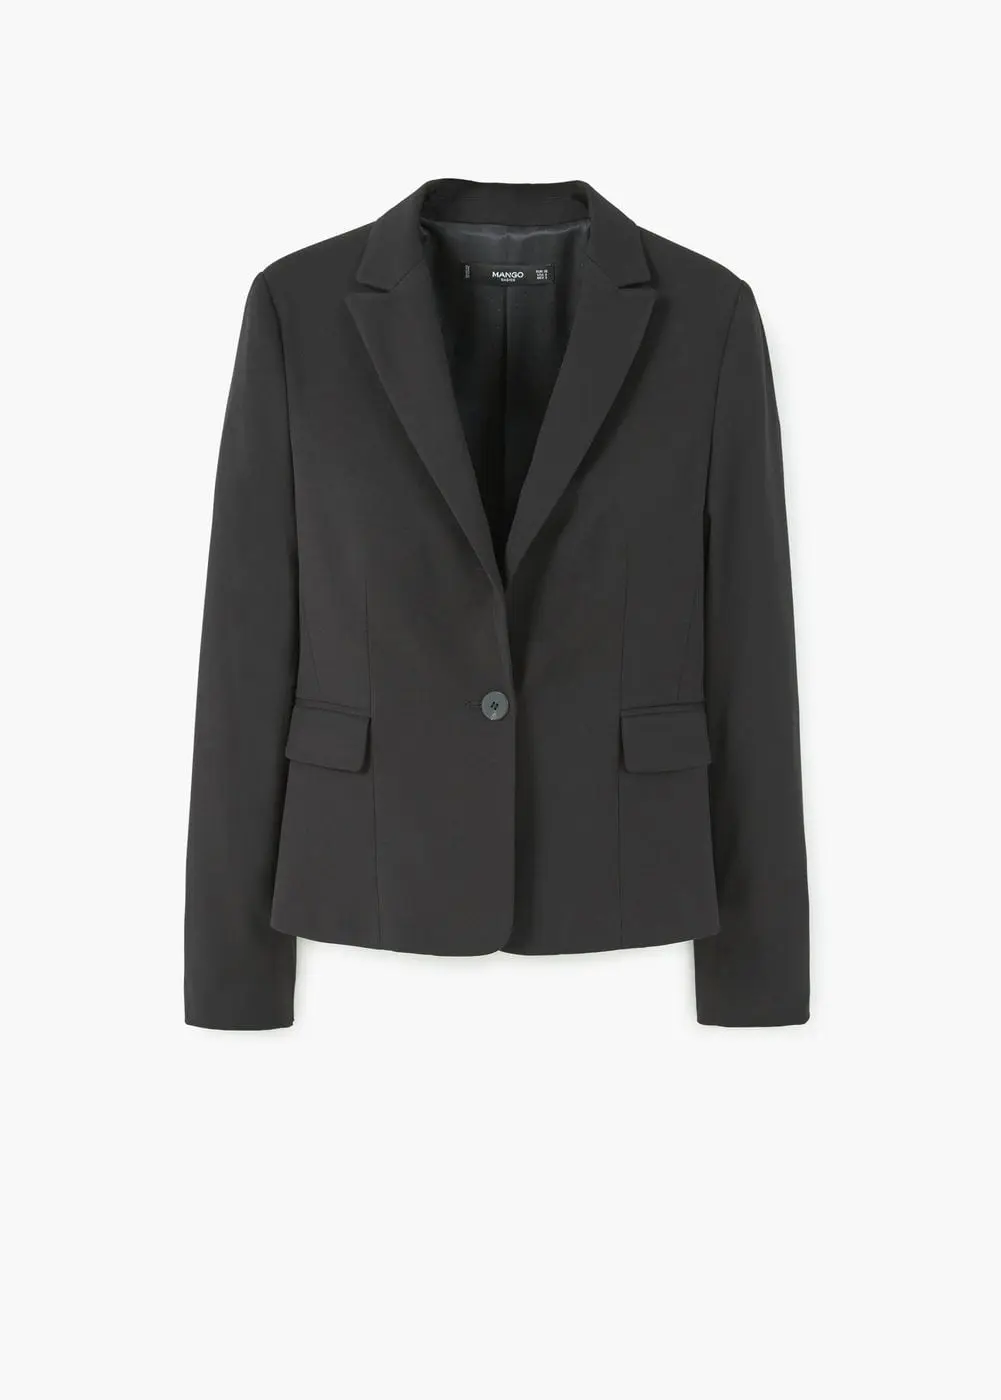 Patterned suit blazer Rp 299.000. (Image: shop.mango.com)